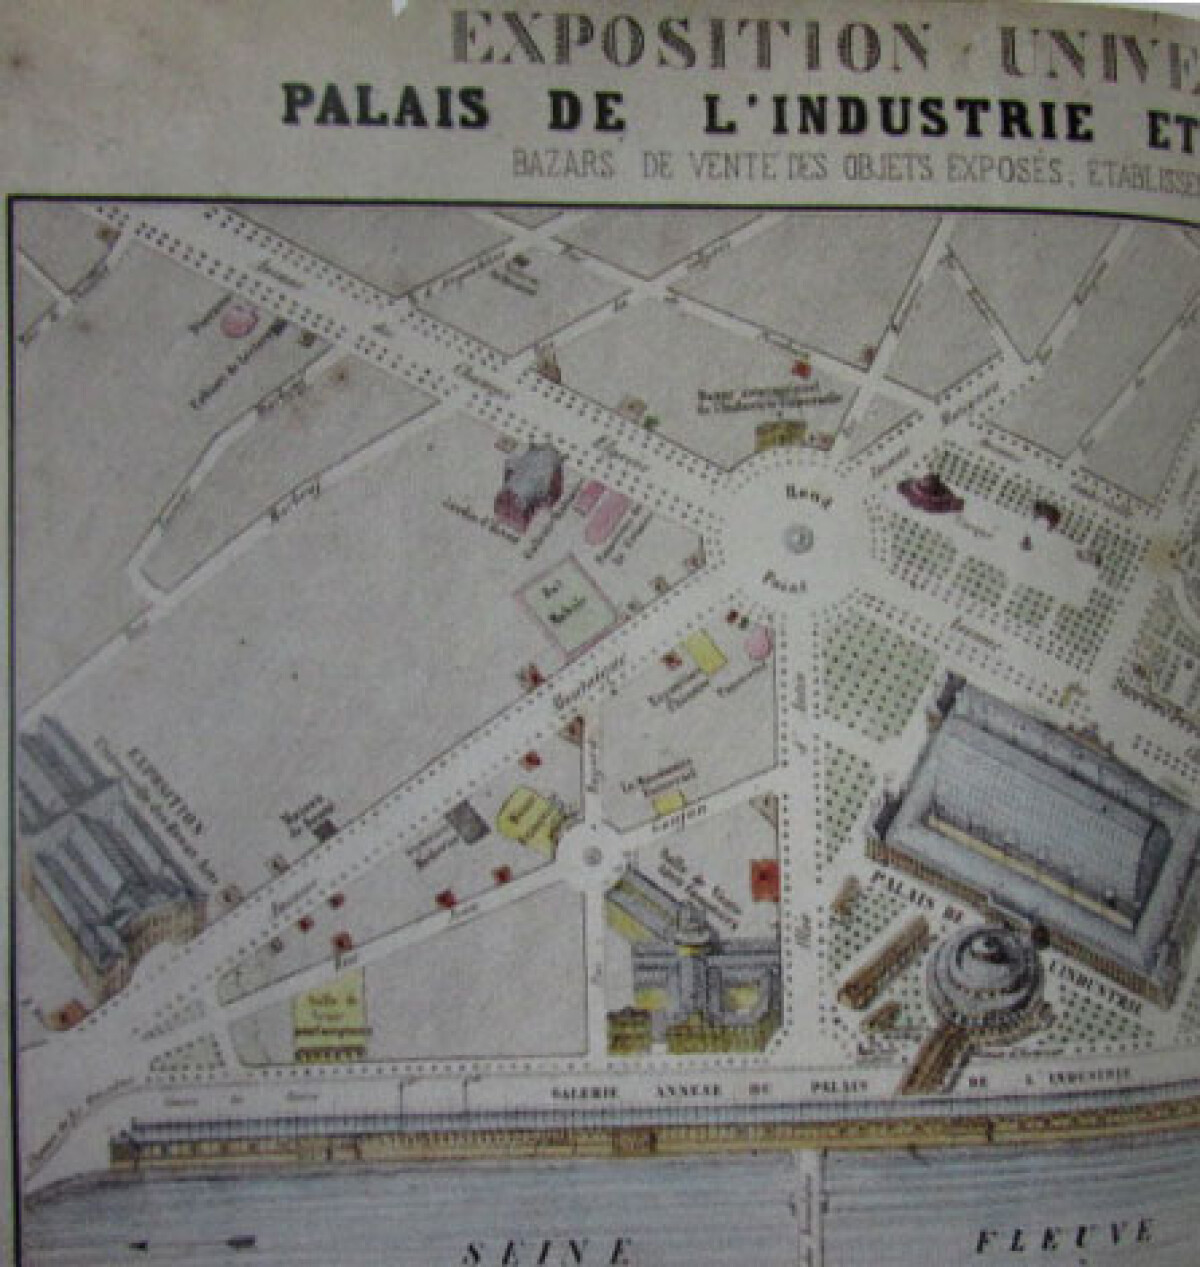 HISTORY OF EXPO: PARIS 1855 - e-history.kz